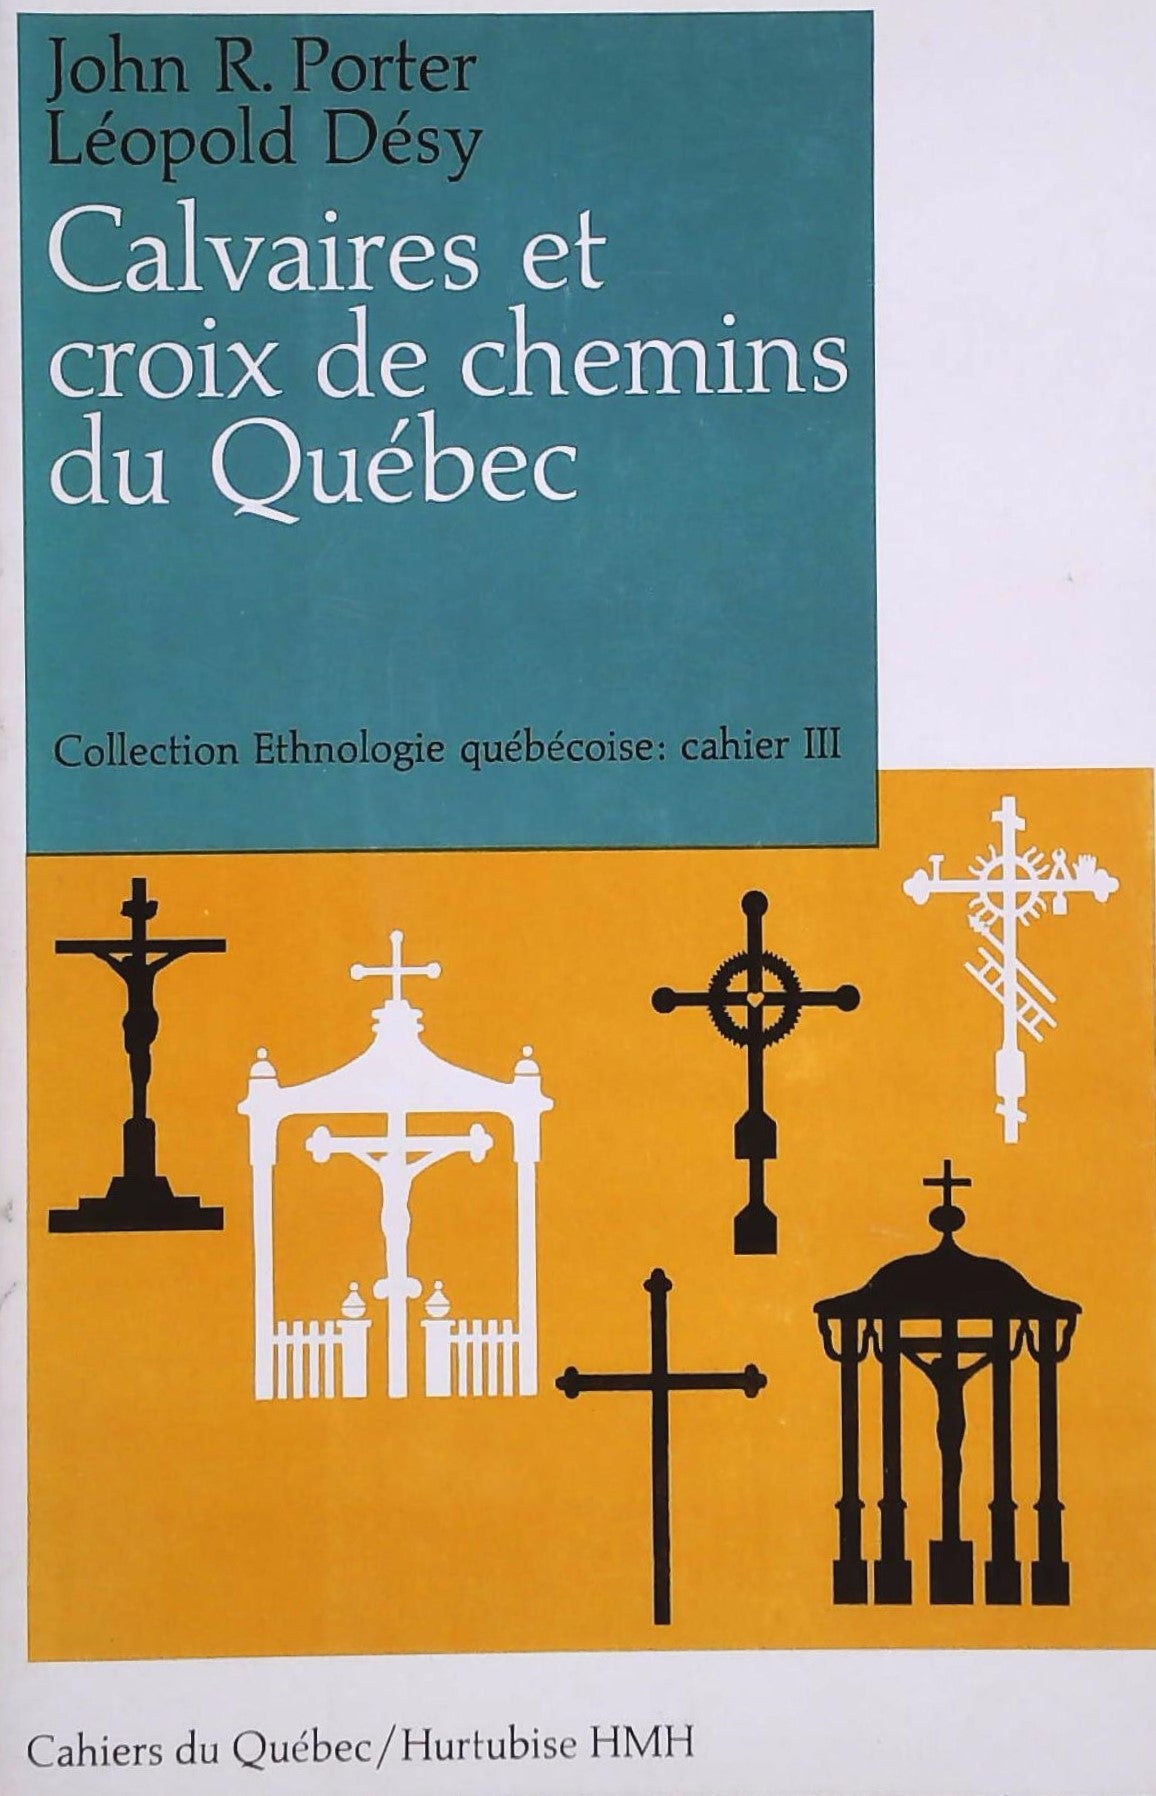 Livre ISBN  Cahiers du Québec # 15 : Calvaires et croix de chemins du Québec (John R Porter)